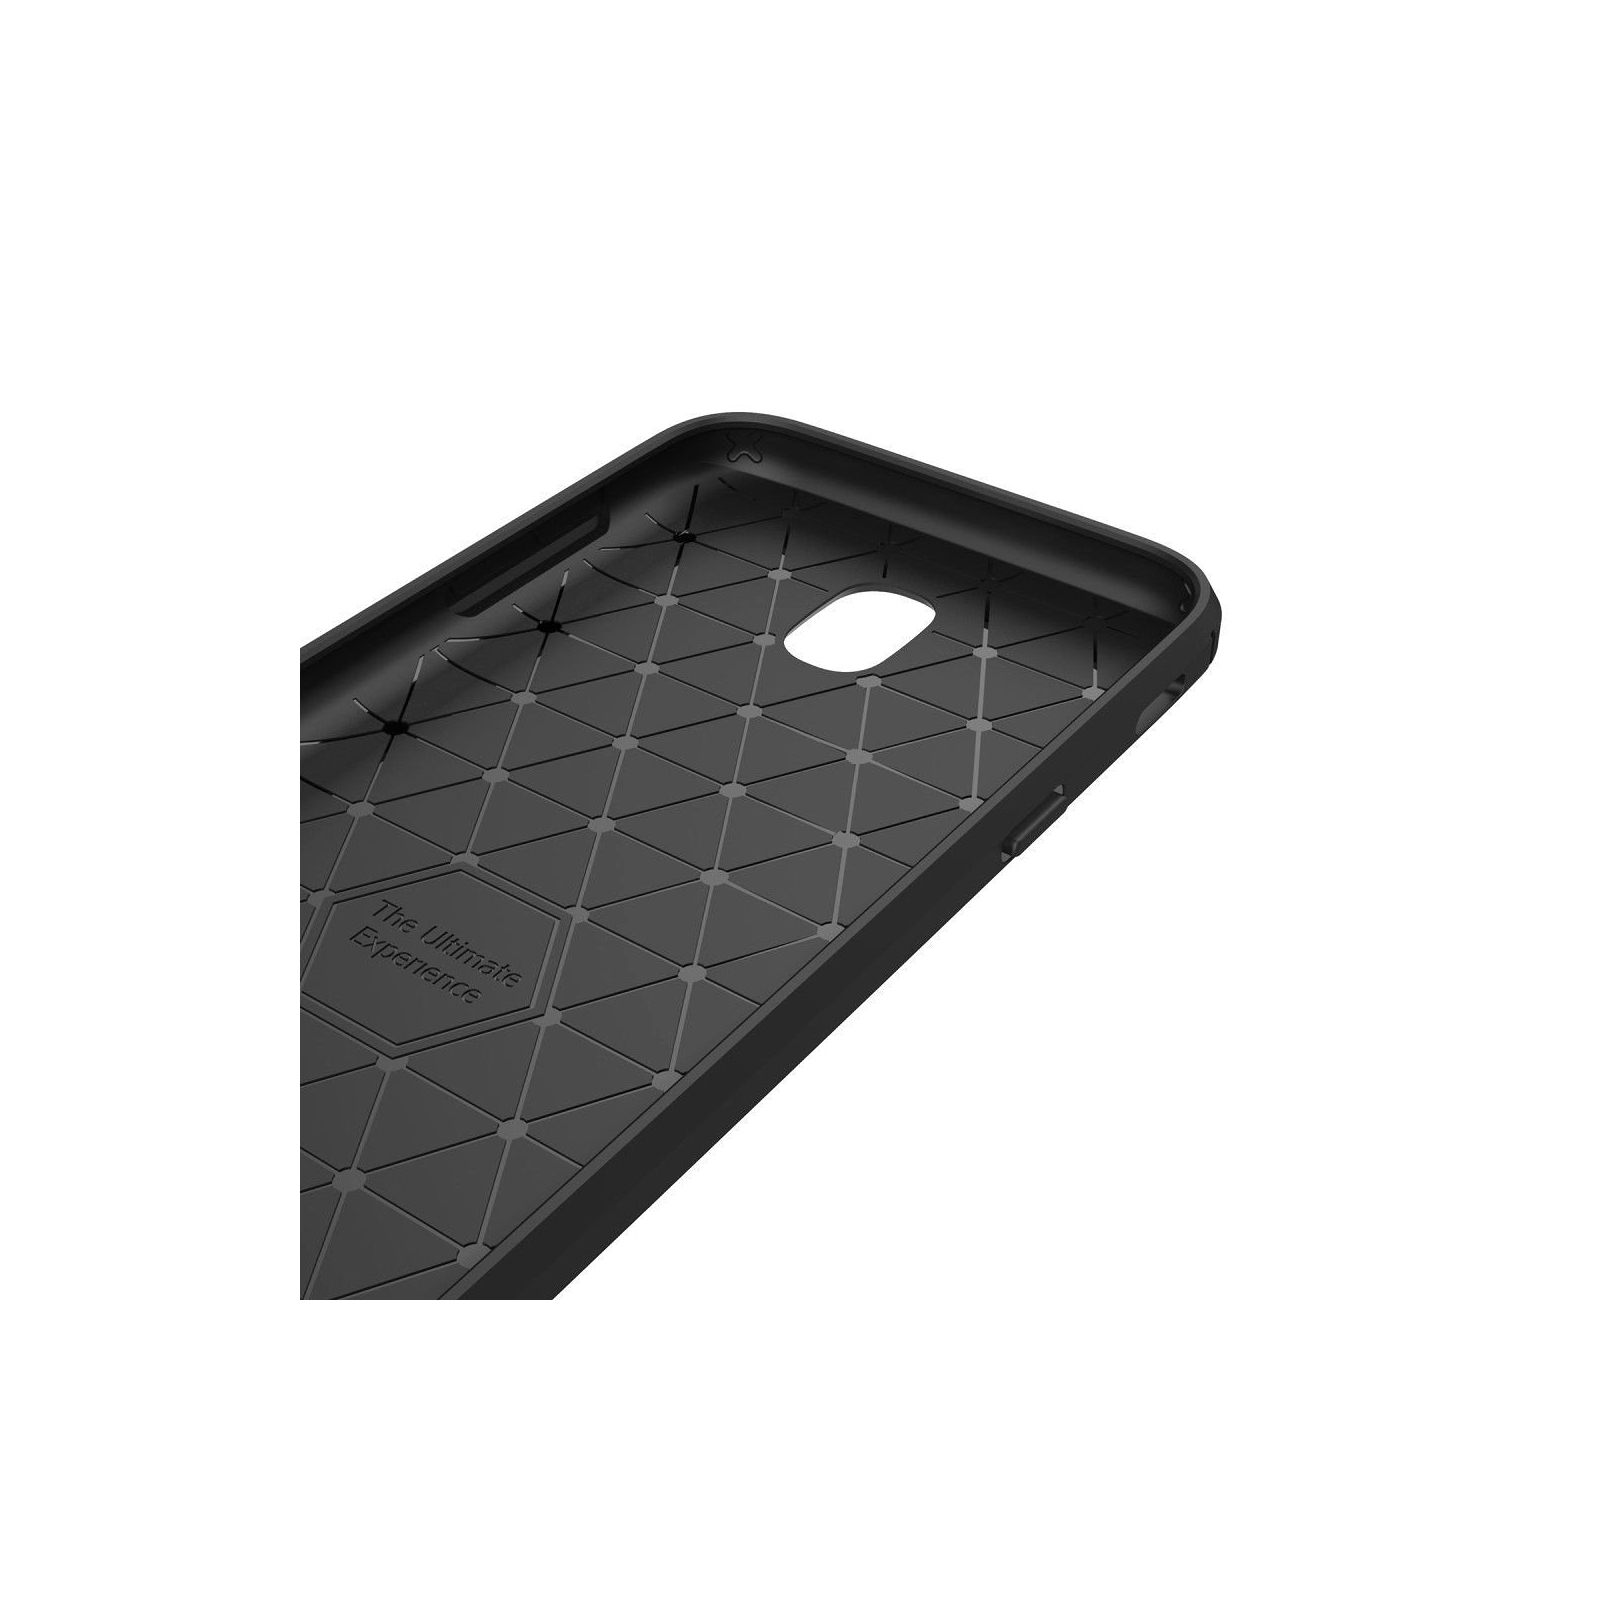 Чехол для мобильного телефона для SAMSUNG Galaxy J7 2016 Carbon Fiber (Black) Laudtec (LT-J72016B) изображение 4